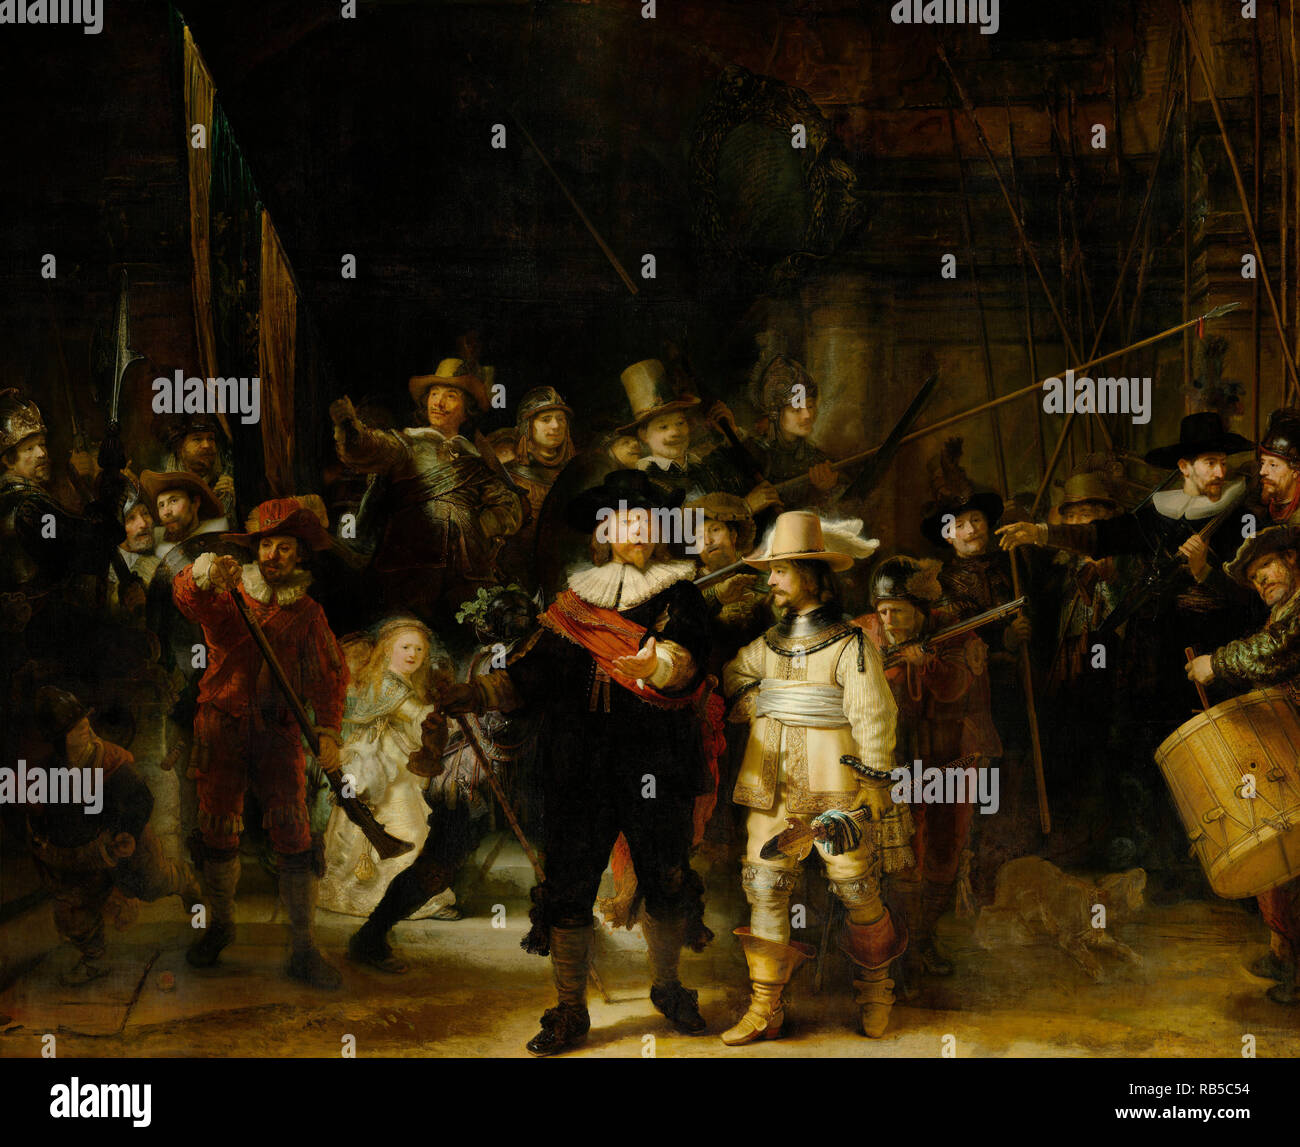 Die Niederlande, Amsterdam, Rijksmuseum. Malerei die Firma von Frans Banninck Cocq oderdie Night Watch. Rembrandt van Rijn. 1642. Stockfoto